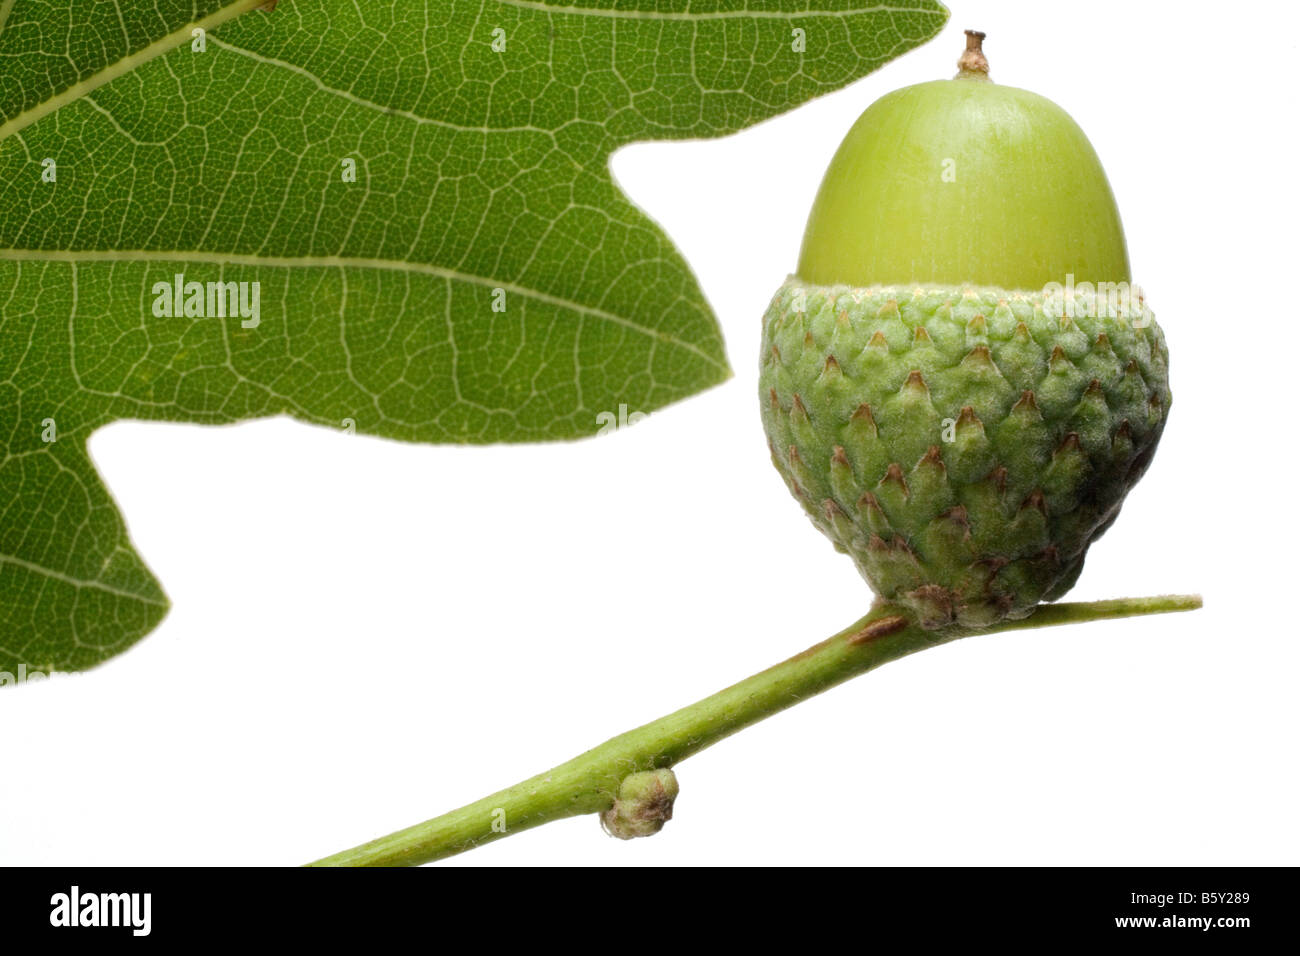 Un verde stelo trattiene un 'acorn cup' in cui vi è un verde acorn, (sementi di una quercia).Sezione di foglie di quercia, sfondo bianco. Foto Stock